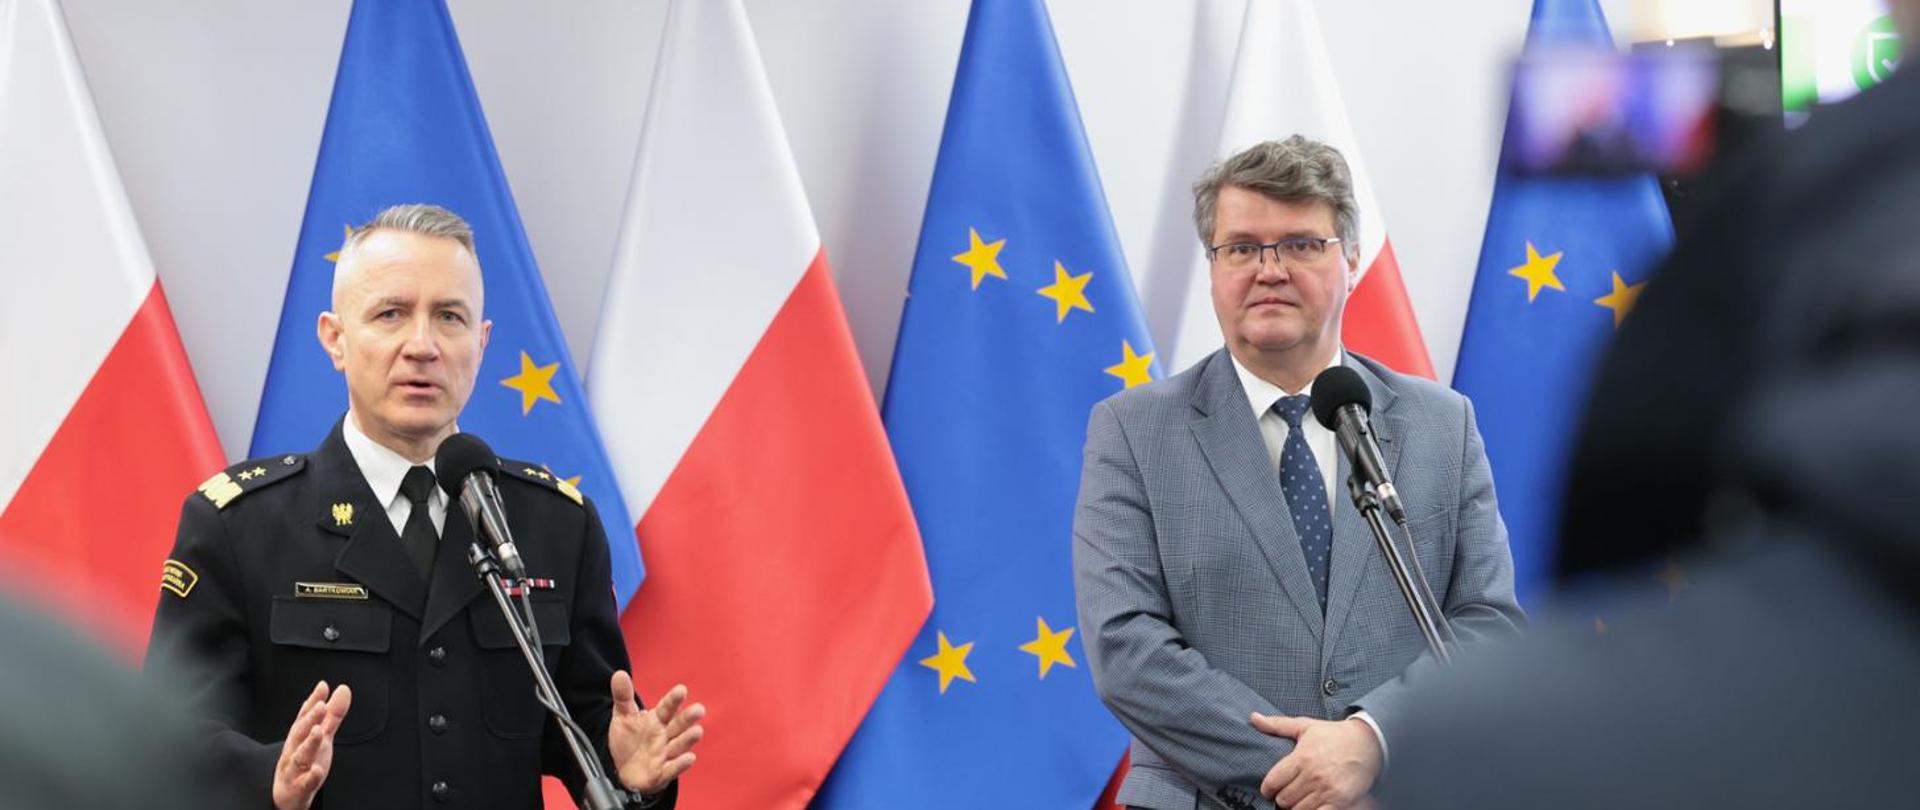 Na zdjęciu na tle flag Polski i Unii Europejskiej z lewi strony jest widoczny komendant główny PSP gen. brygadier Andrzej Bartkowiak. Komendant ubrany jest w mundur galowy koloru czarnego. Po prawej stronie jest widoczny jest wiceminister Maciej Wąsik, ubrany w szary garnitur. Obaj panowie stoją przed ustawionymi przed nimi mikrofonami